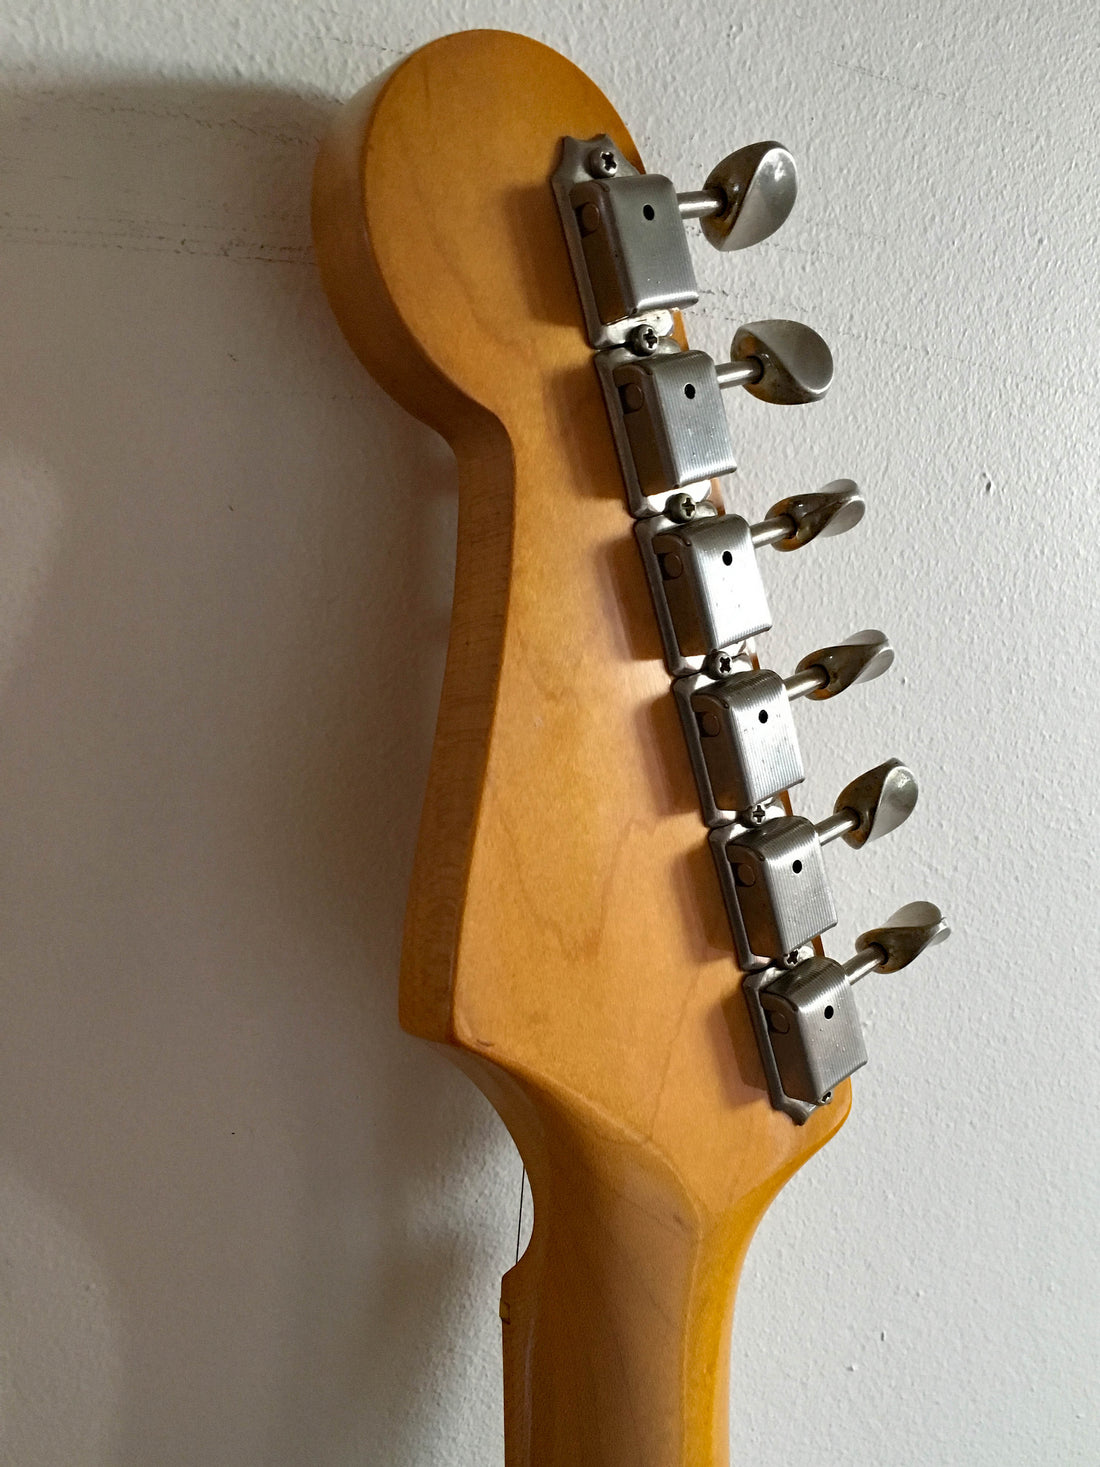 Used Fender Lace-Sensor Stratocaster Black 1991